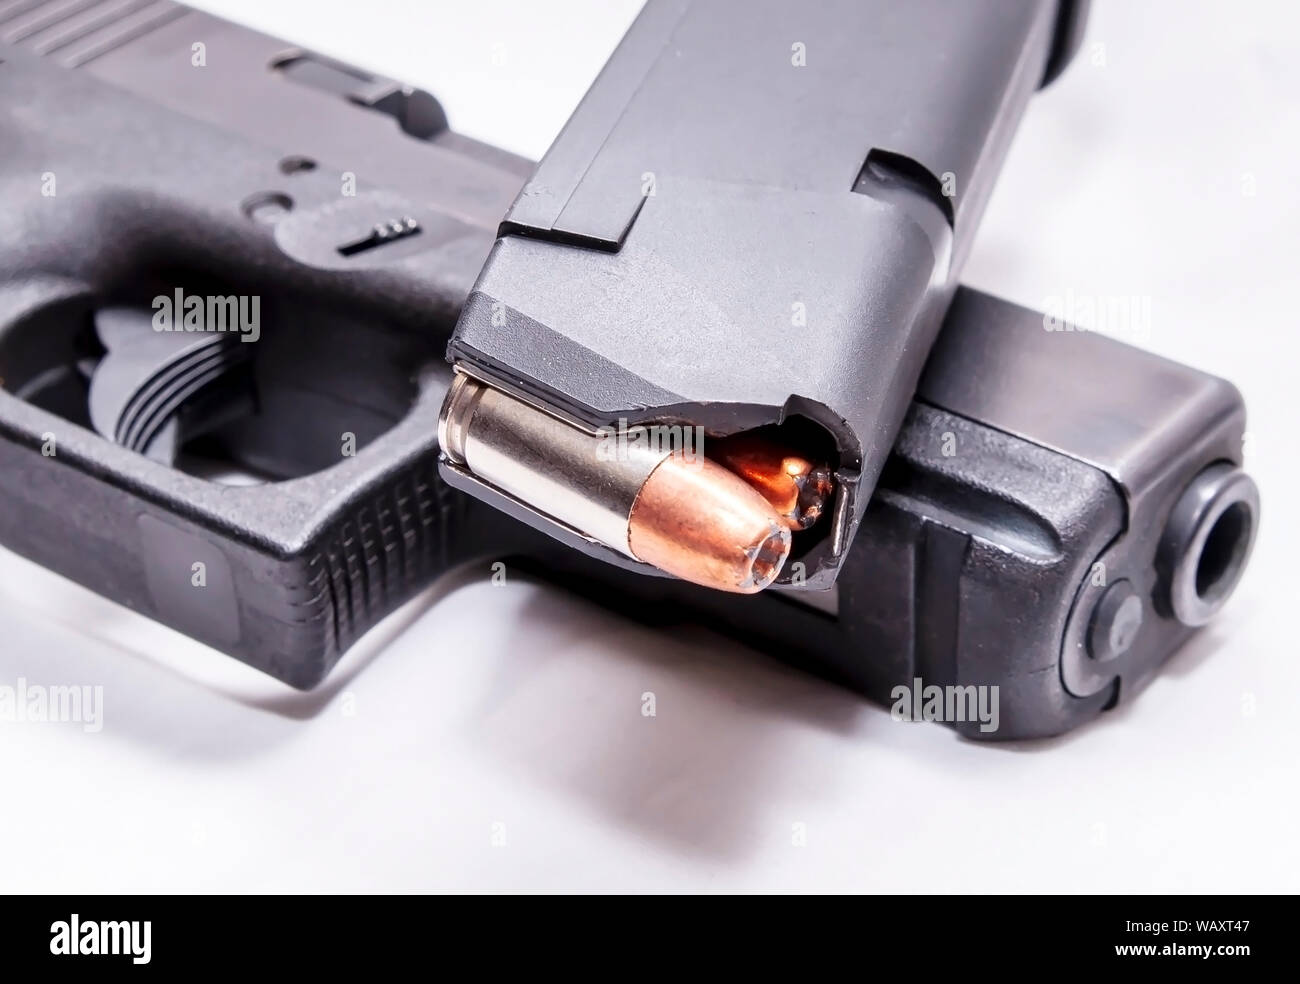 Un carico di 9mm pistol magazine sulla parte superiore di un nero 9mm pistola su sfondo bianco Foto Stock